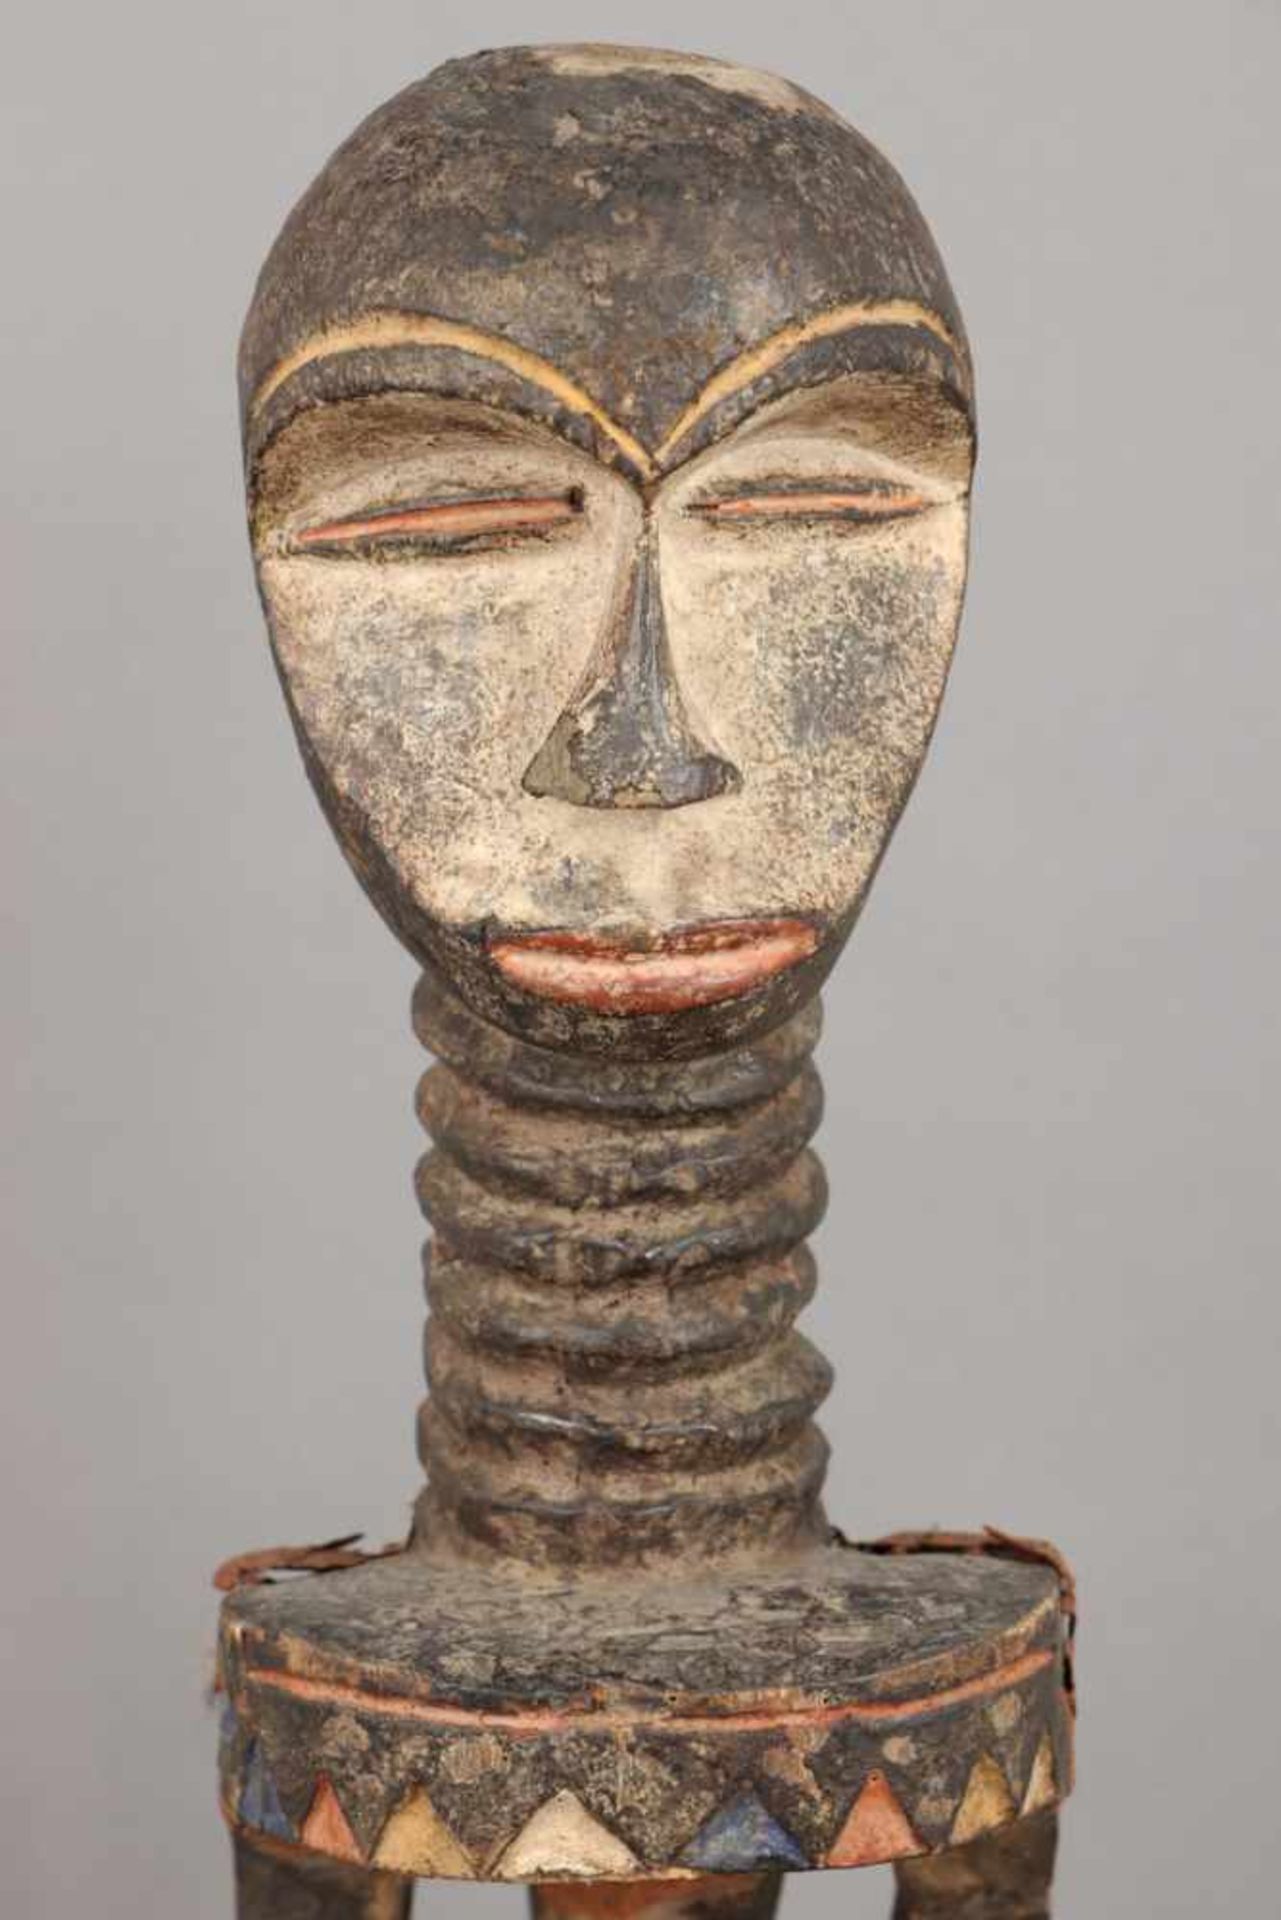 Afrikanische Ritual-/Ahnenfigur Holz, geschnitzt und geschwärzt, in Partien rot-weiß (Kaolin) - Image 4 of 4